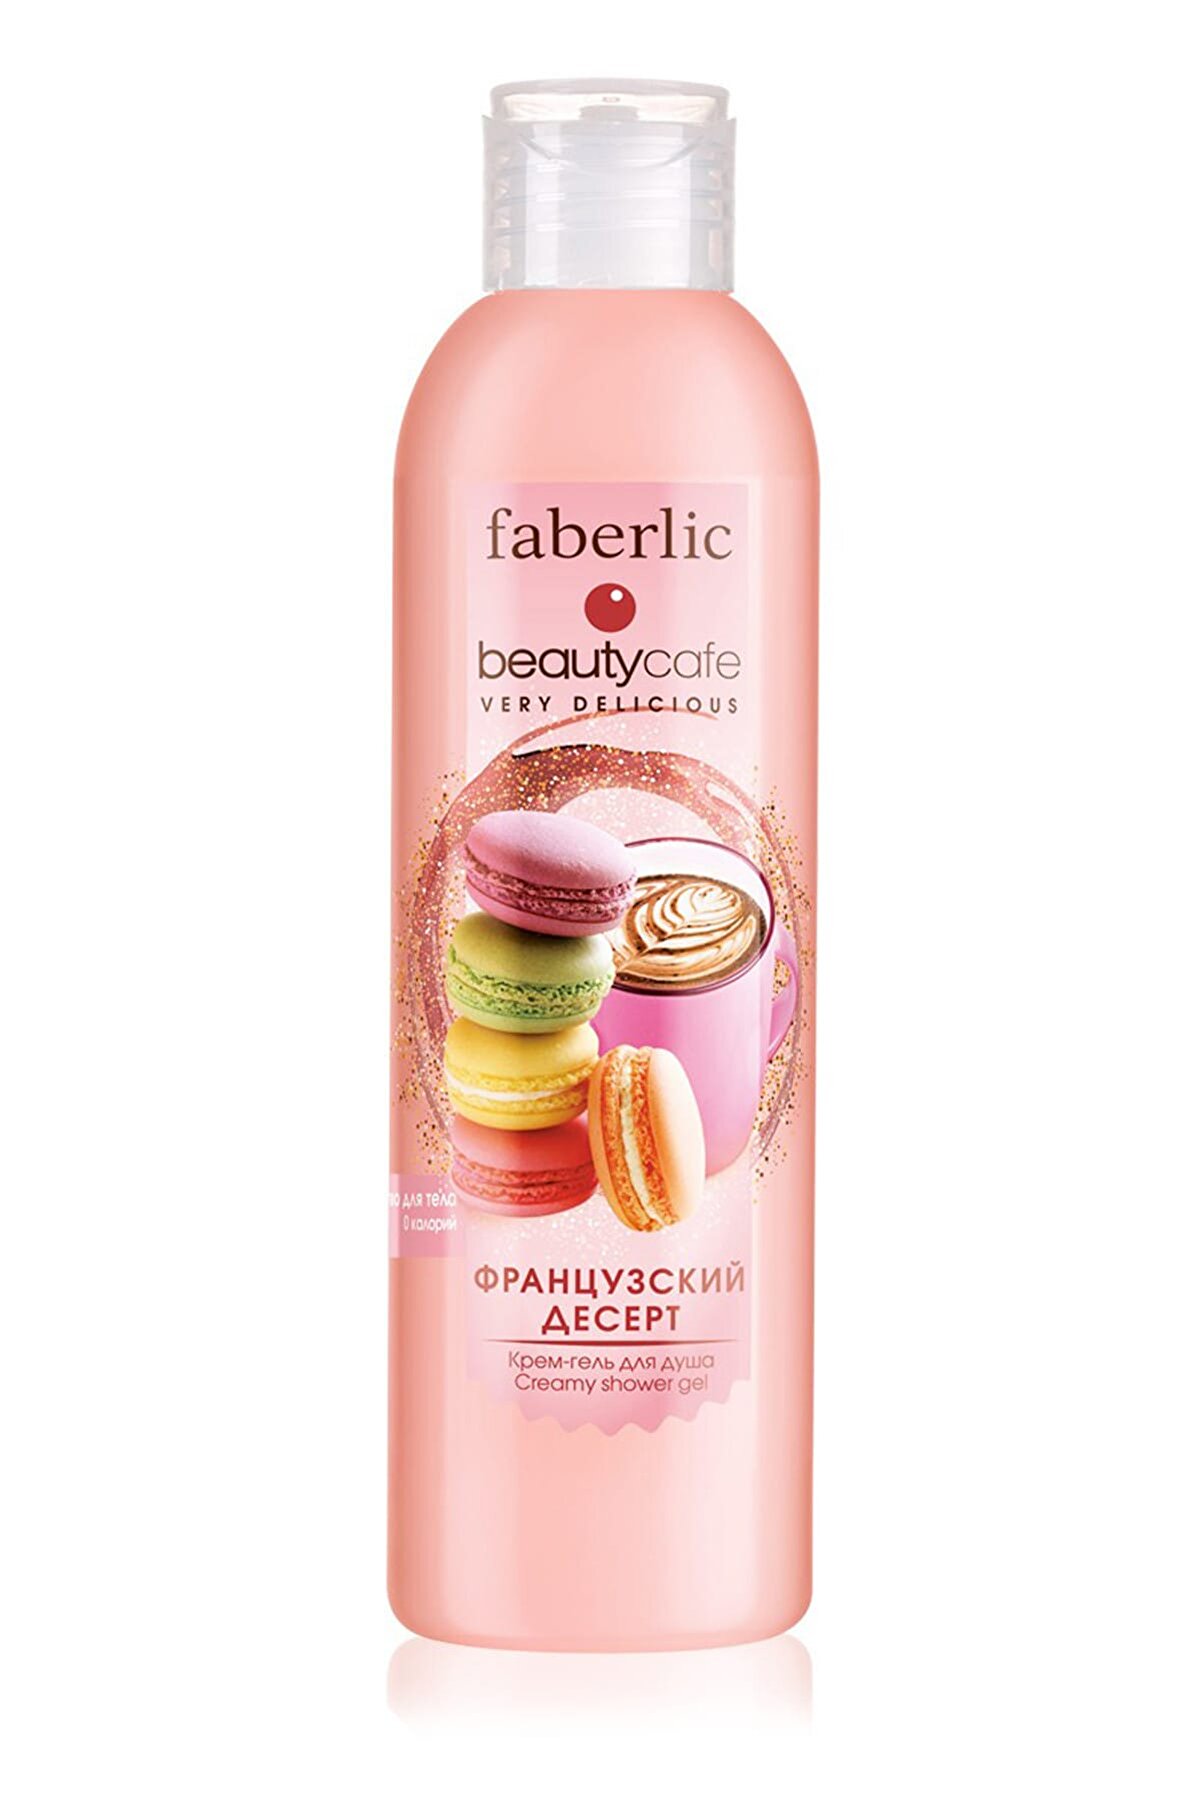 Faberlic Beauty Cafe Fransız Tatlıları Kokulu Krem Duş Jeli 200 ml 4690302335977